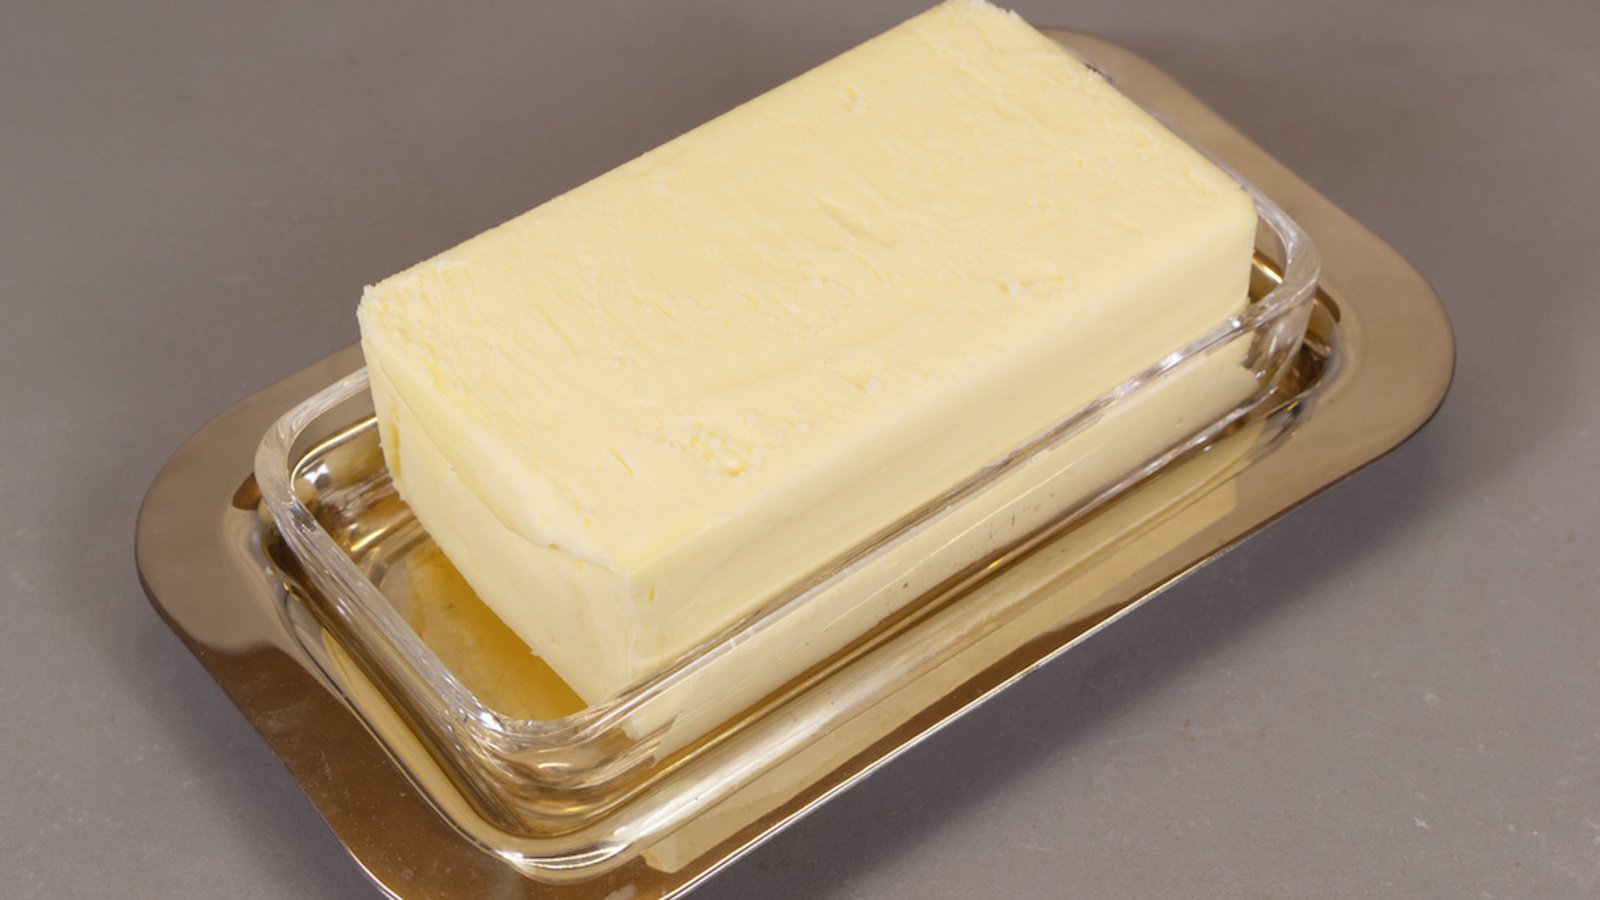 Est-il sécuritaire de garder le beurre à la température de la pièce?